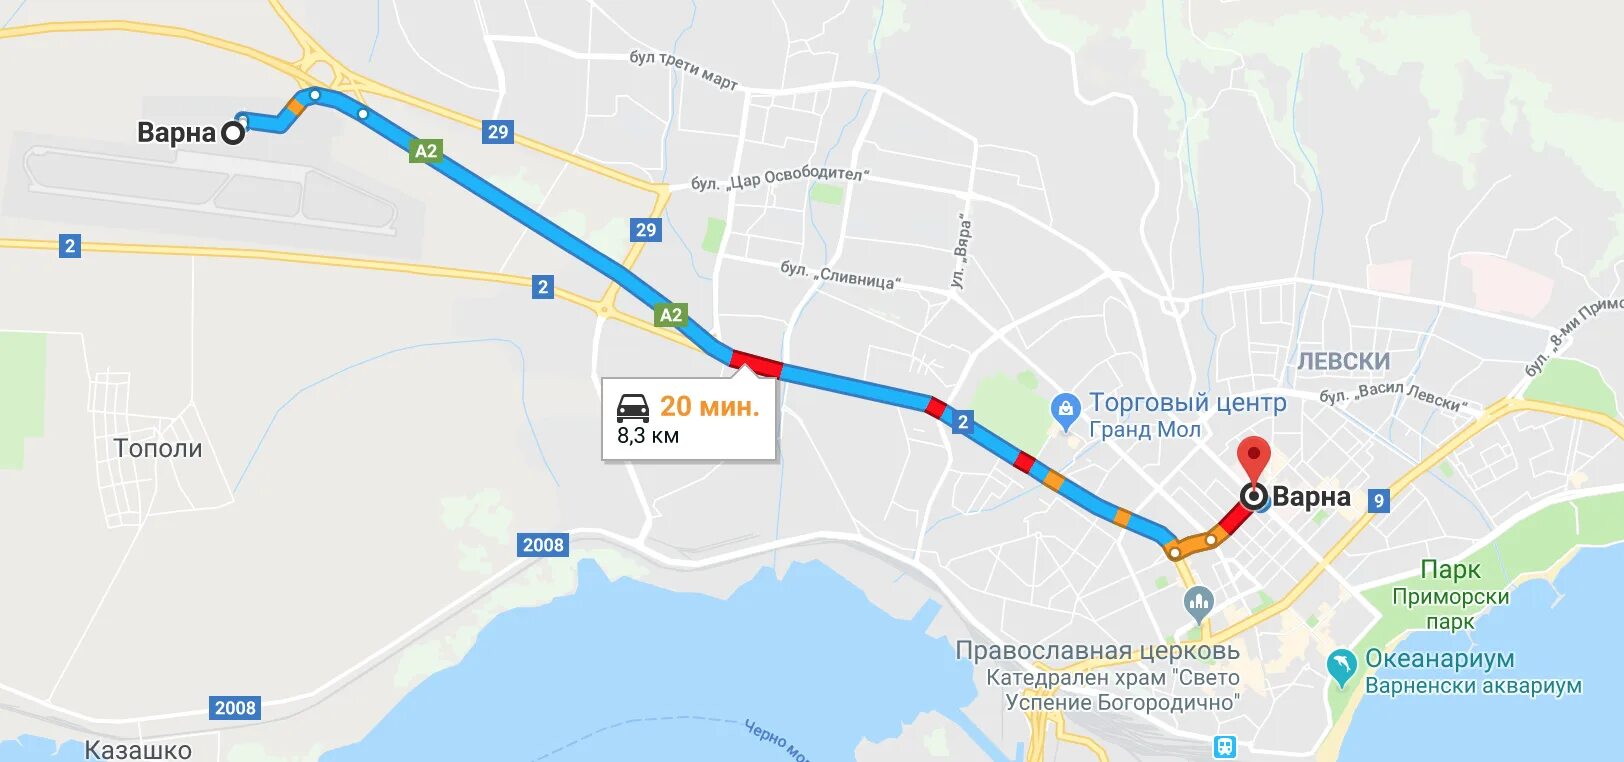 Сколько аэропортов в анталии. Анталья из аэропорта до автовокзала. Анталья автобусные маршруты. Анталия - Варна автобус. Автовокзал Анталии на карте.